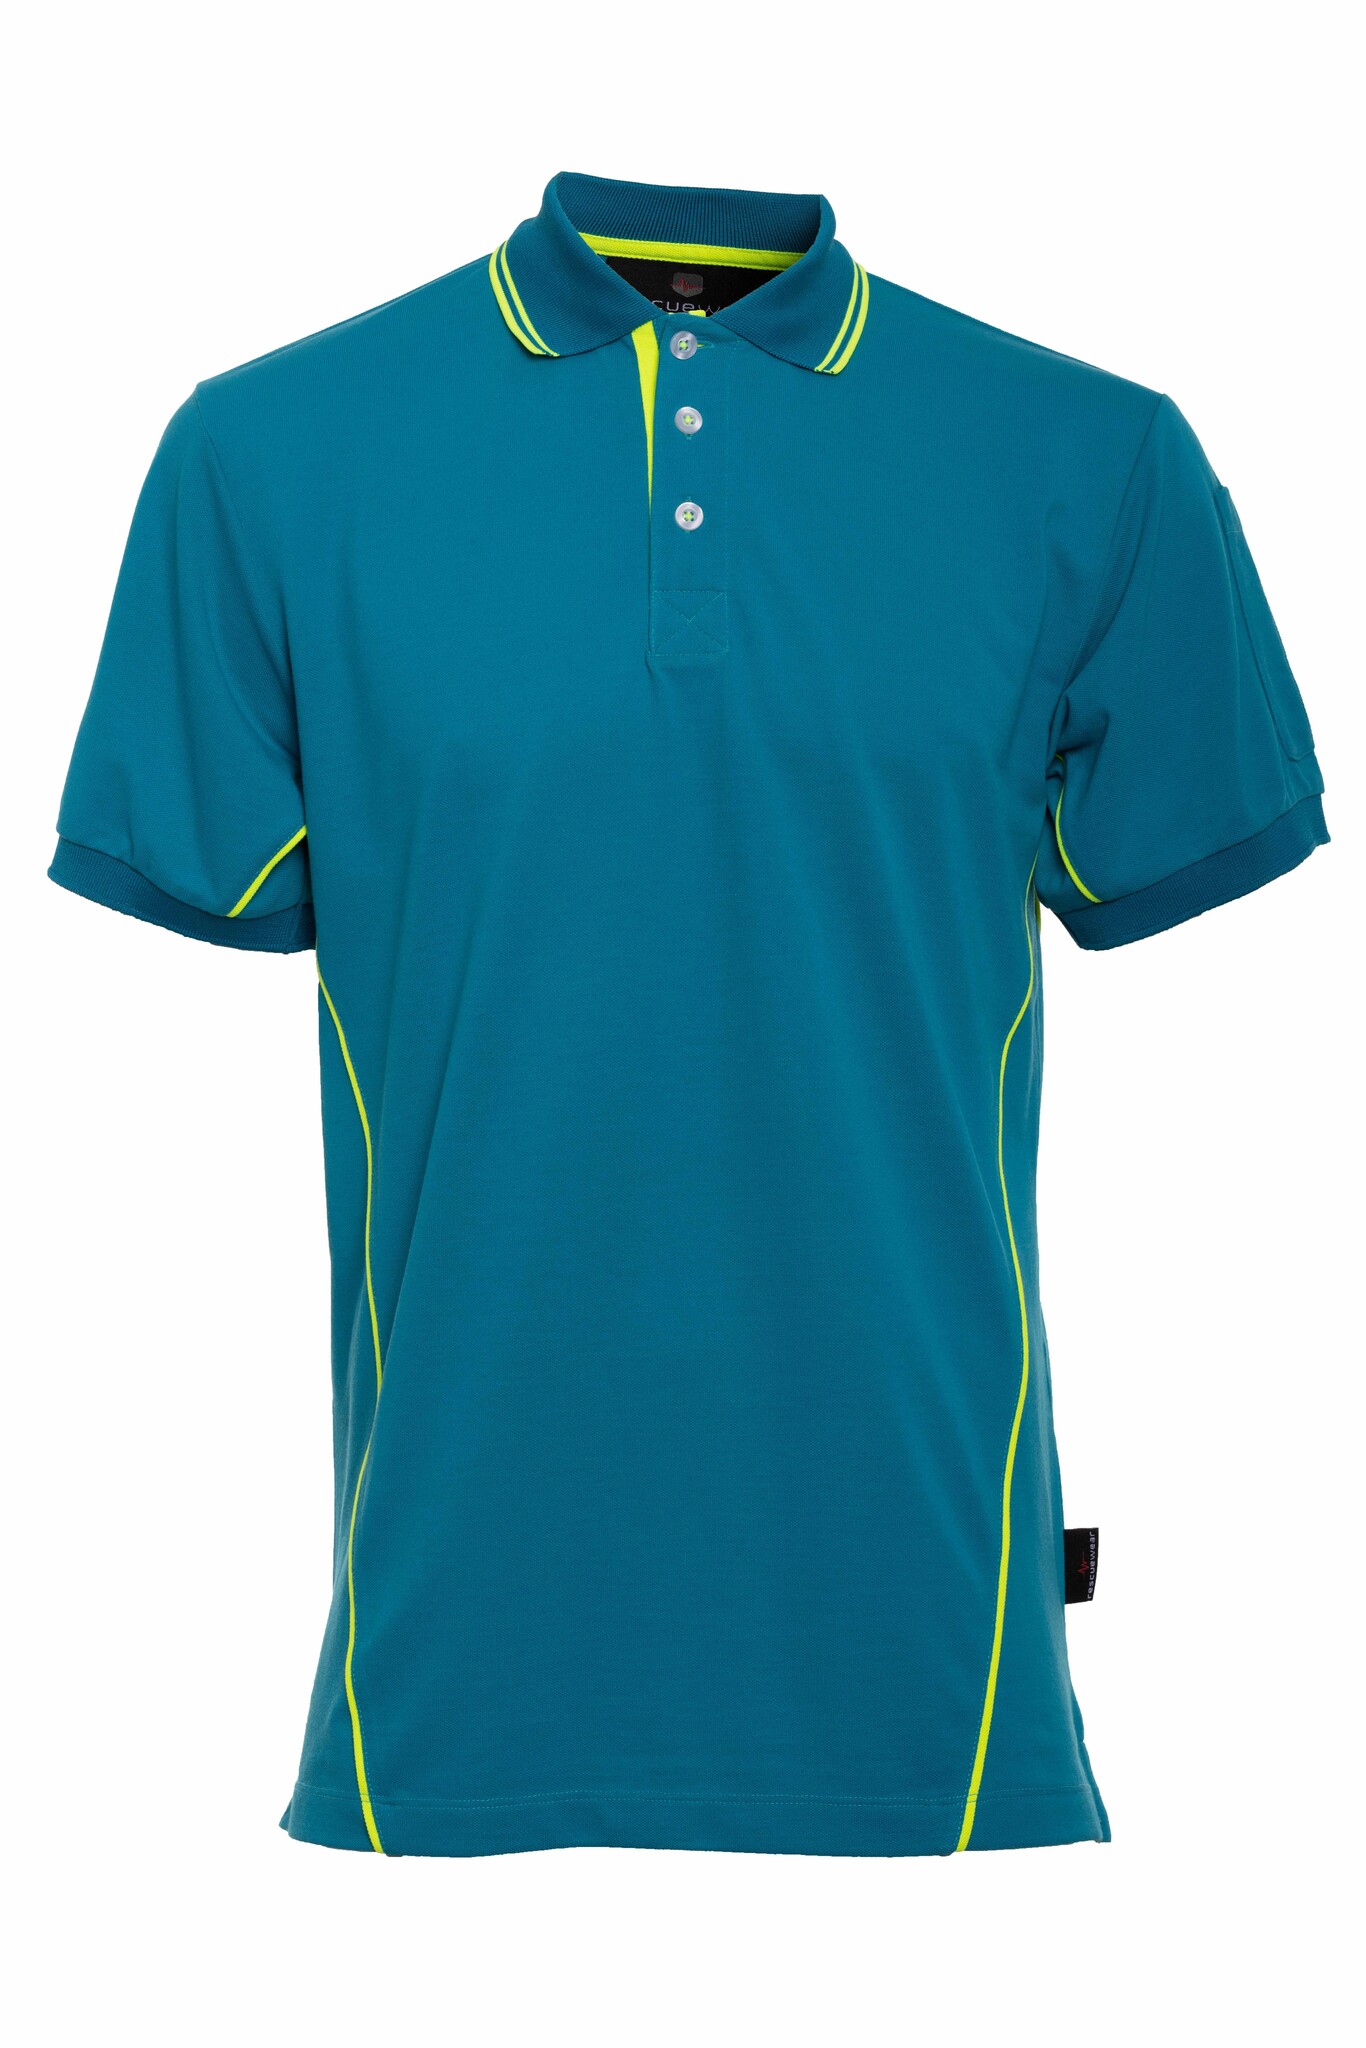 Enamel/ Paspeln Blau Basic, mit ärmel, Kurze Navy Neongelbe Poloshirt